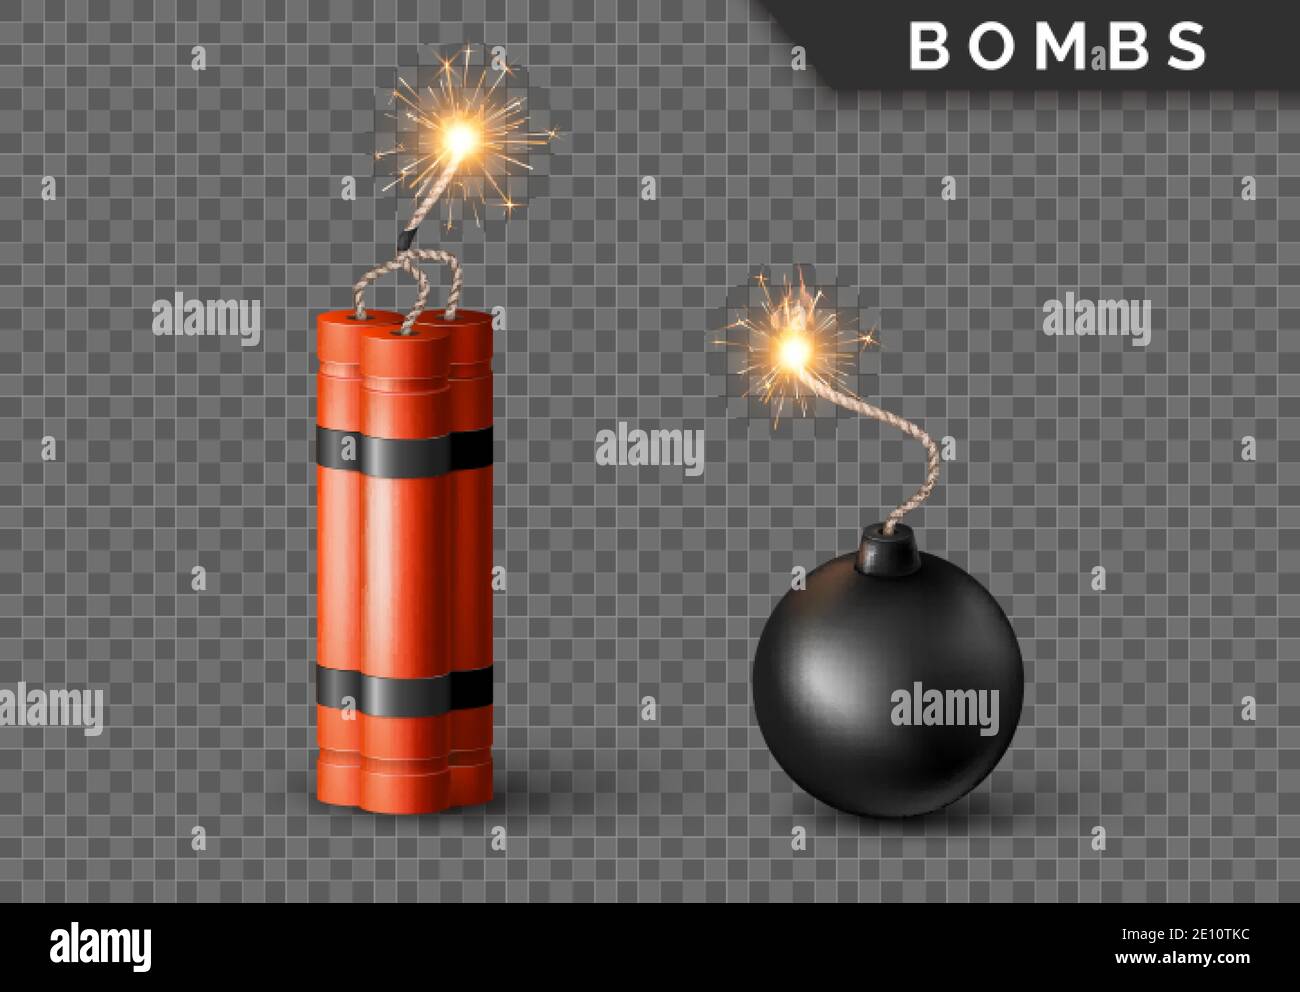 Bomba dinamite con Burning Wick e bomba a sfera nera. Detonazione militare arma rossa. Illustrazione vettoriale Illustrazione Vettoriale